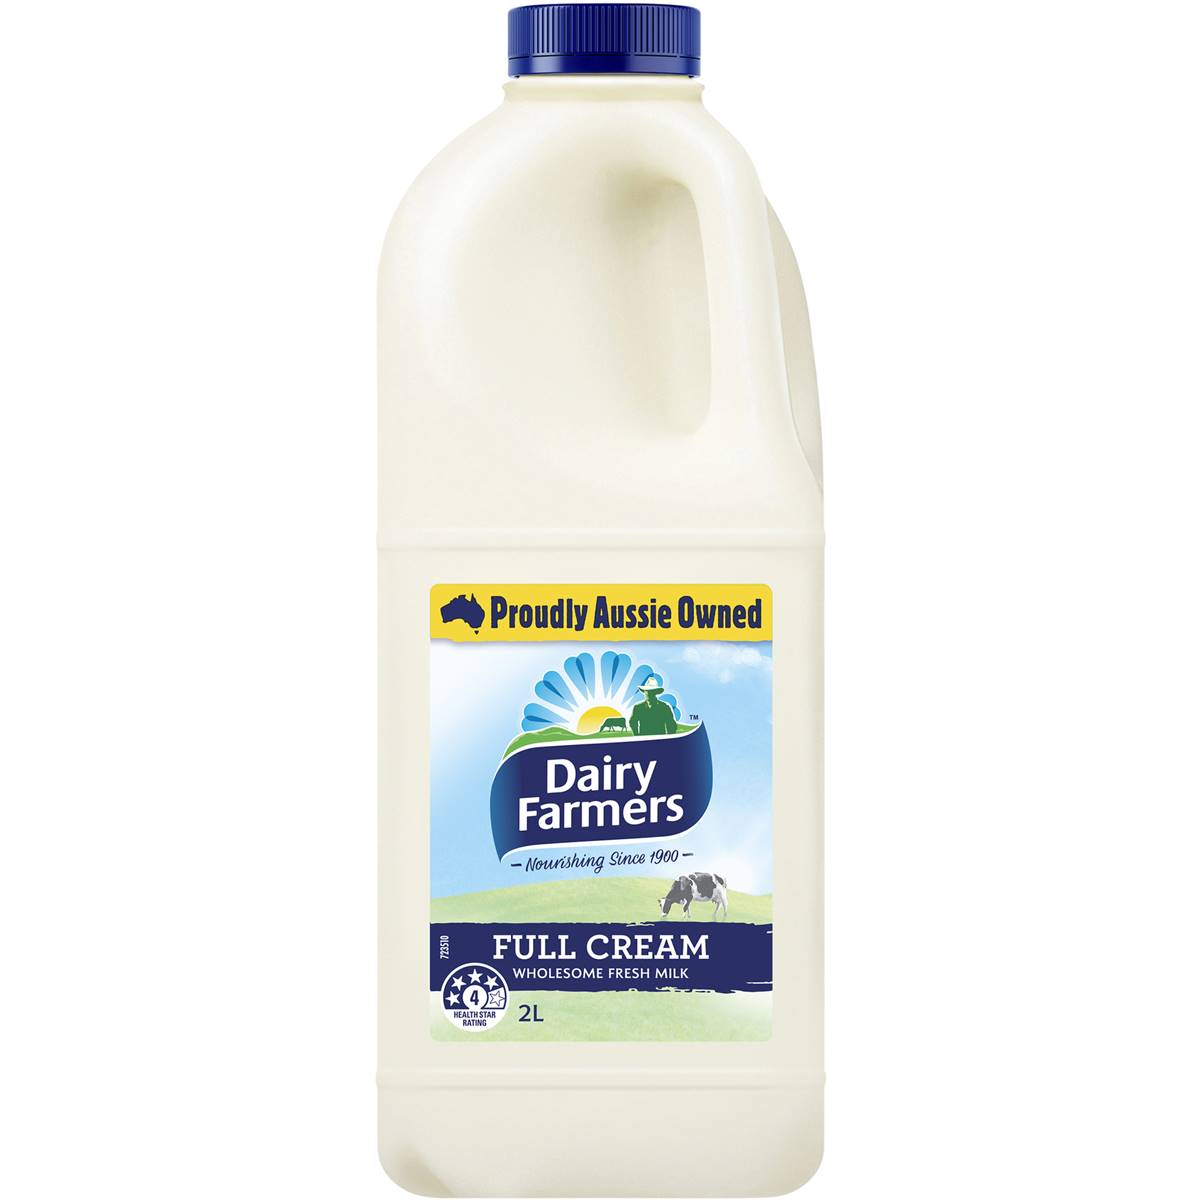 Calories in Dairy Farmers Full Cream Milk Full Cream Milk